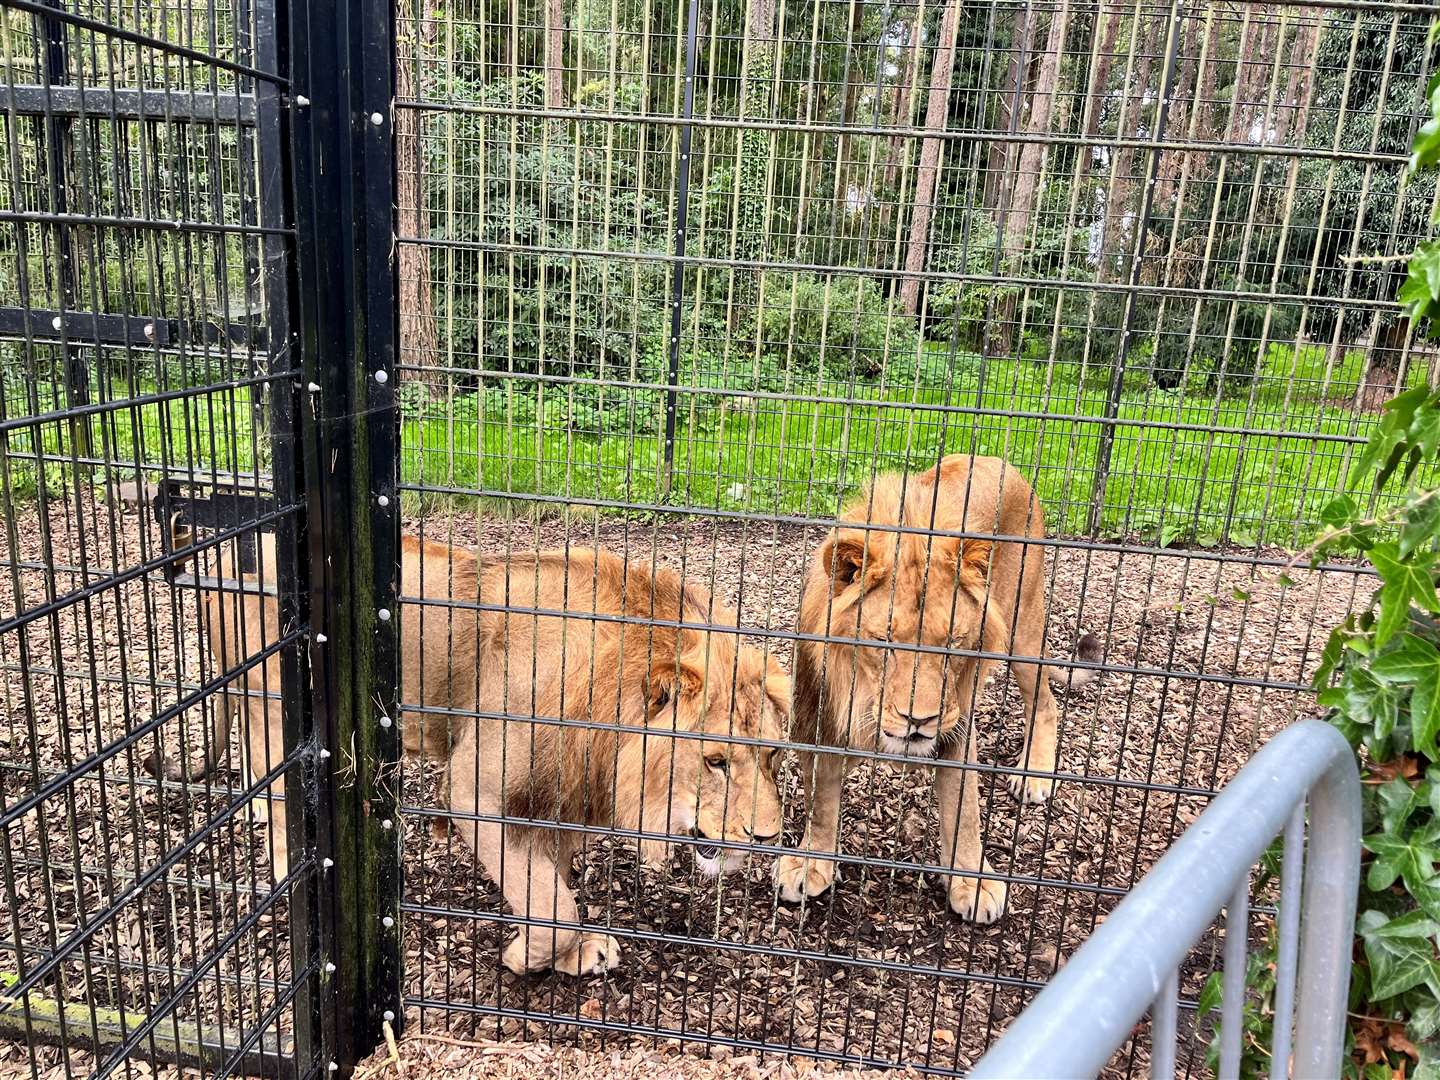 Lions Hasani and Kamari